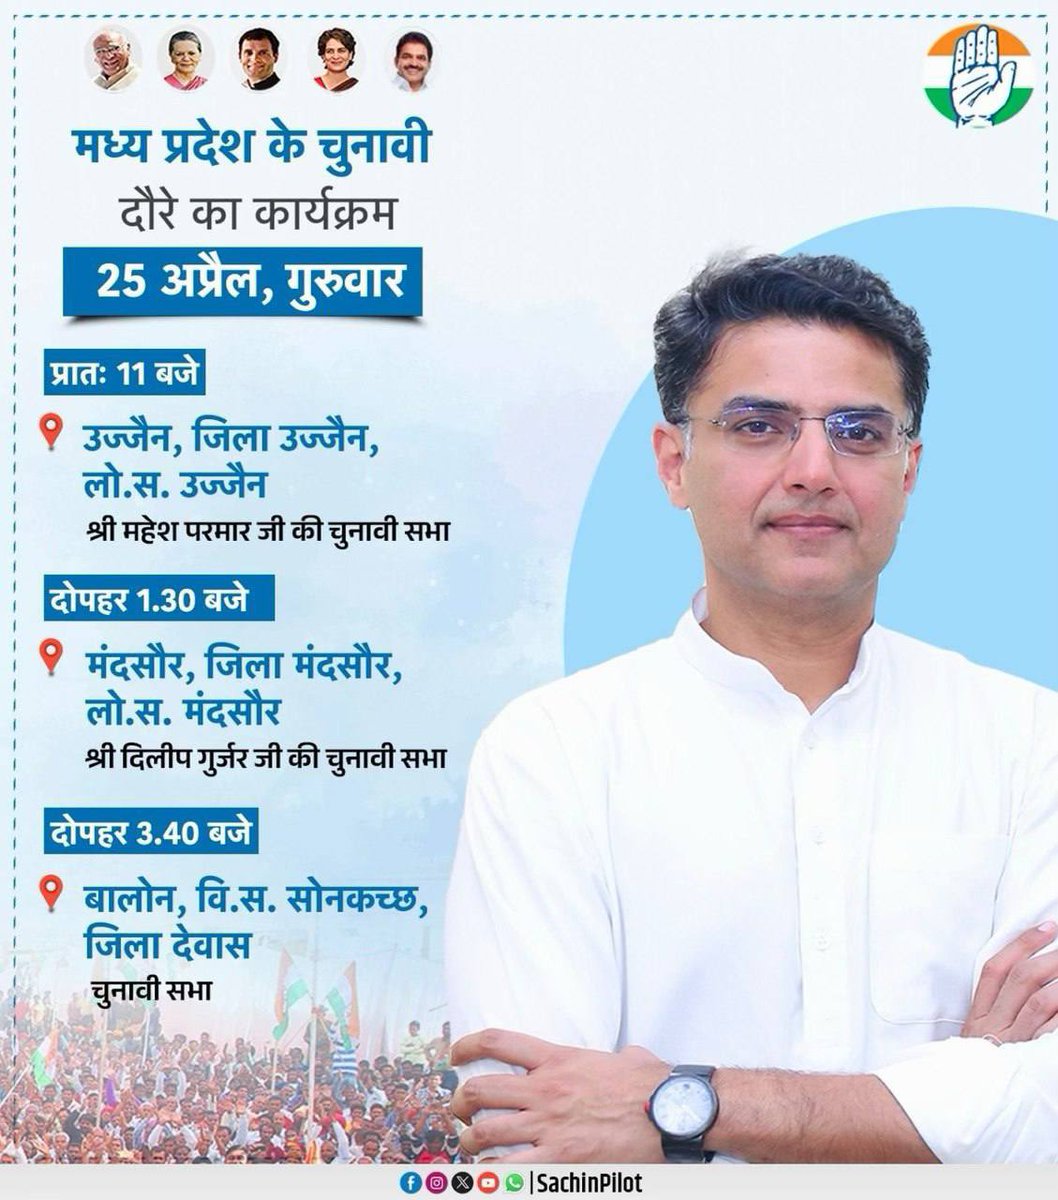 कल 25 अप्रैल के मध्य प्रदेश के चुनावी दौरे का कार्यक्रम।